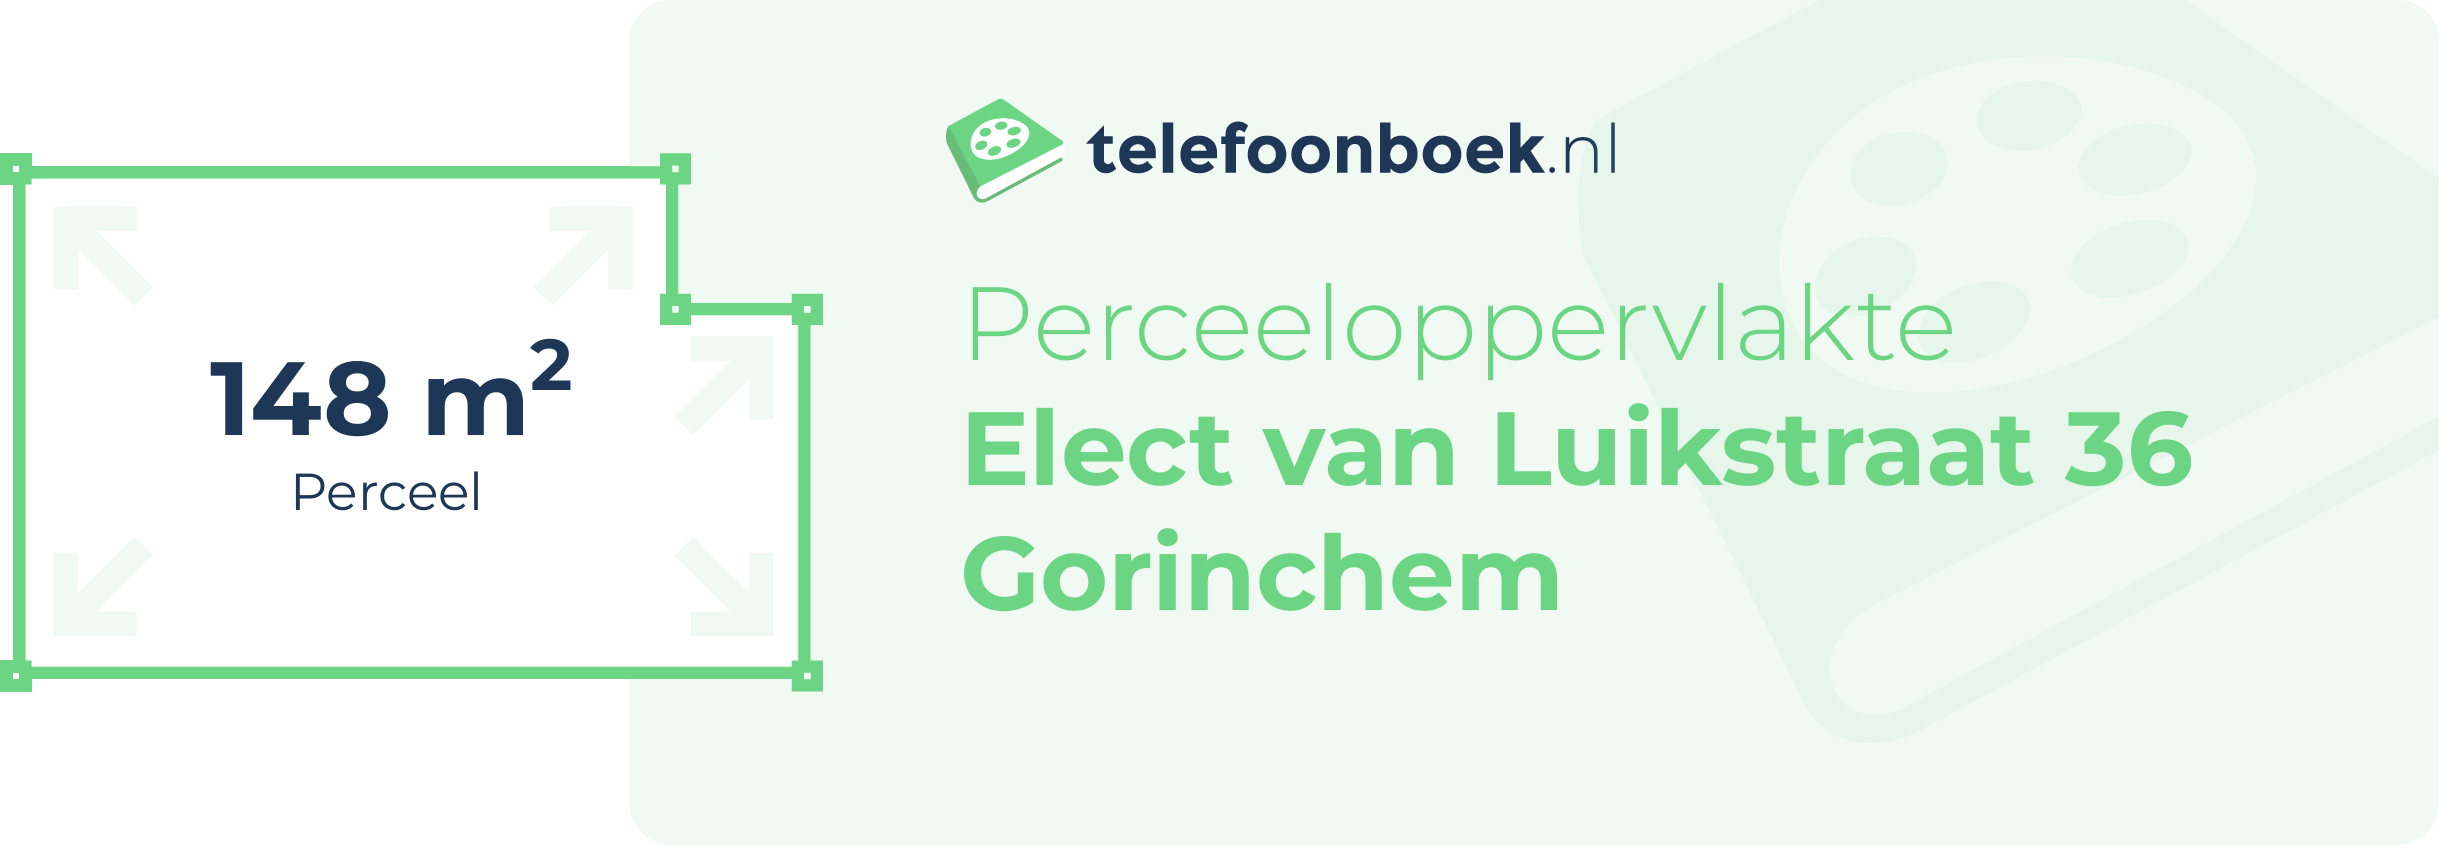 Perceeloppervlakte Elect Van Luikstraat 36 Gorinchem